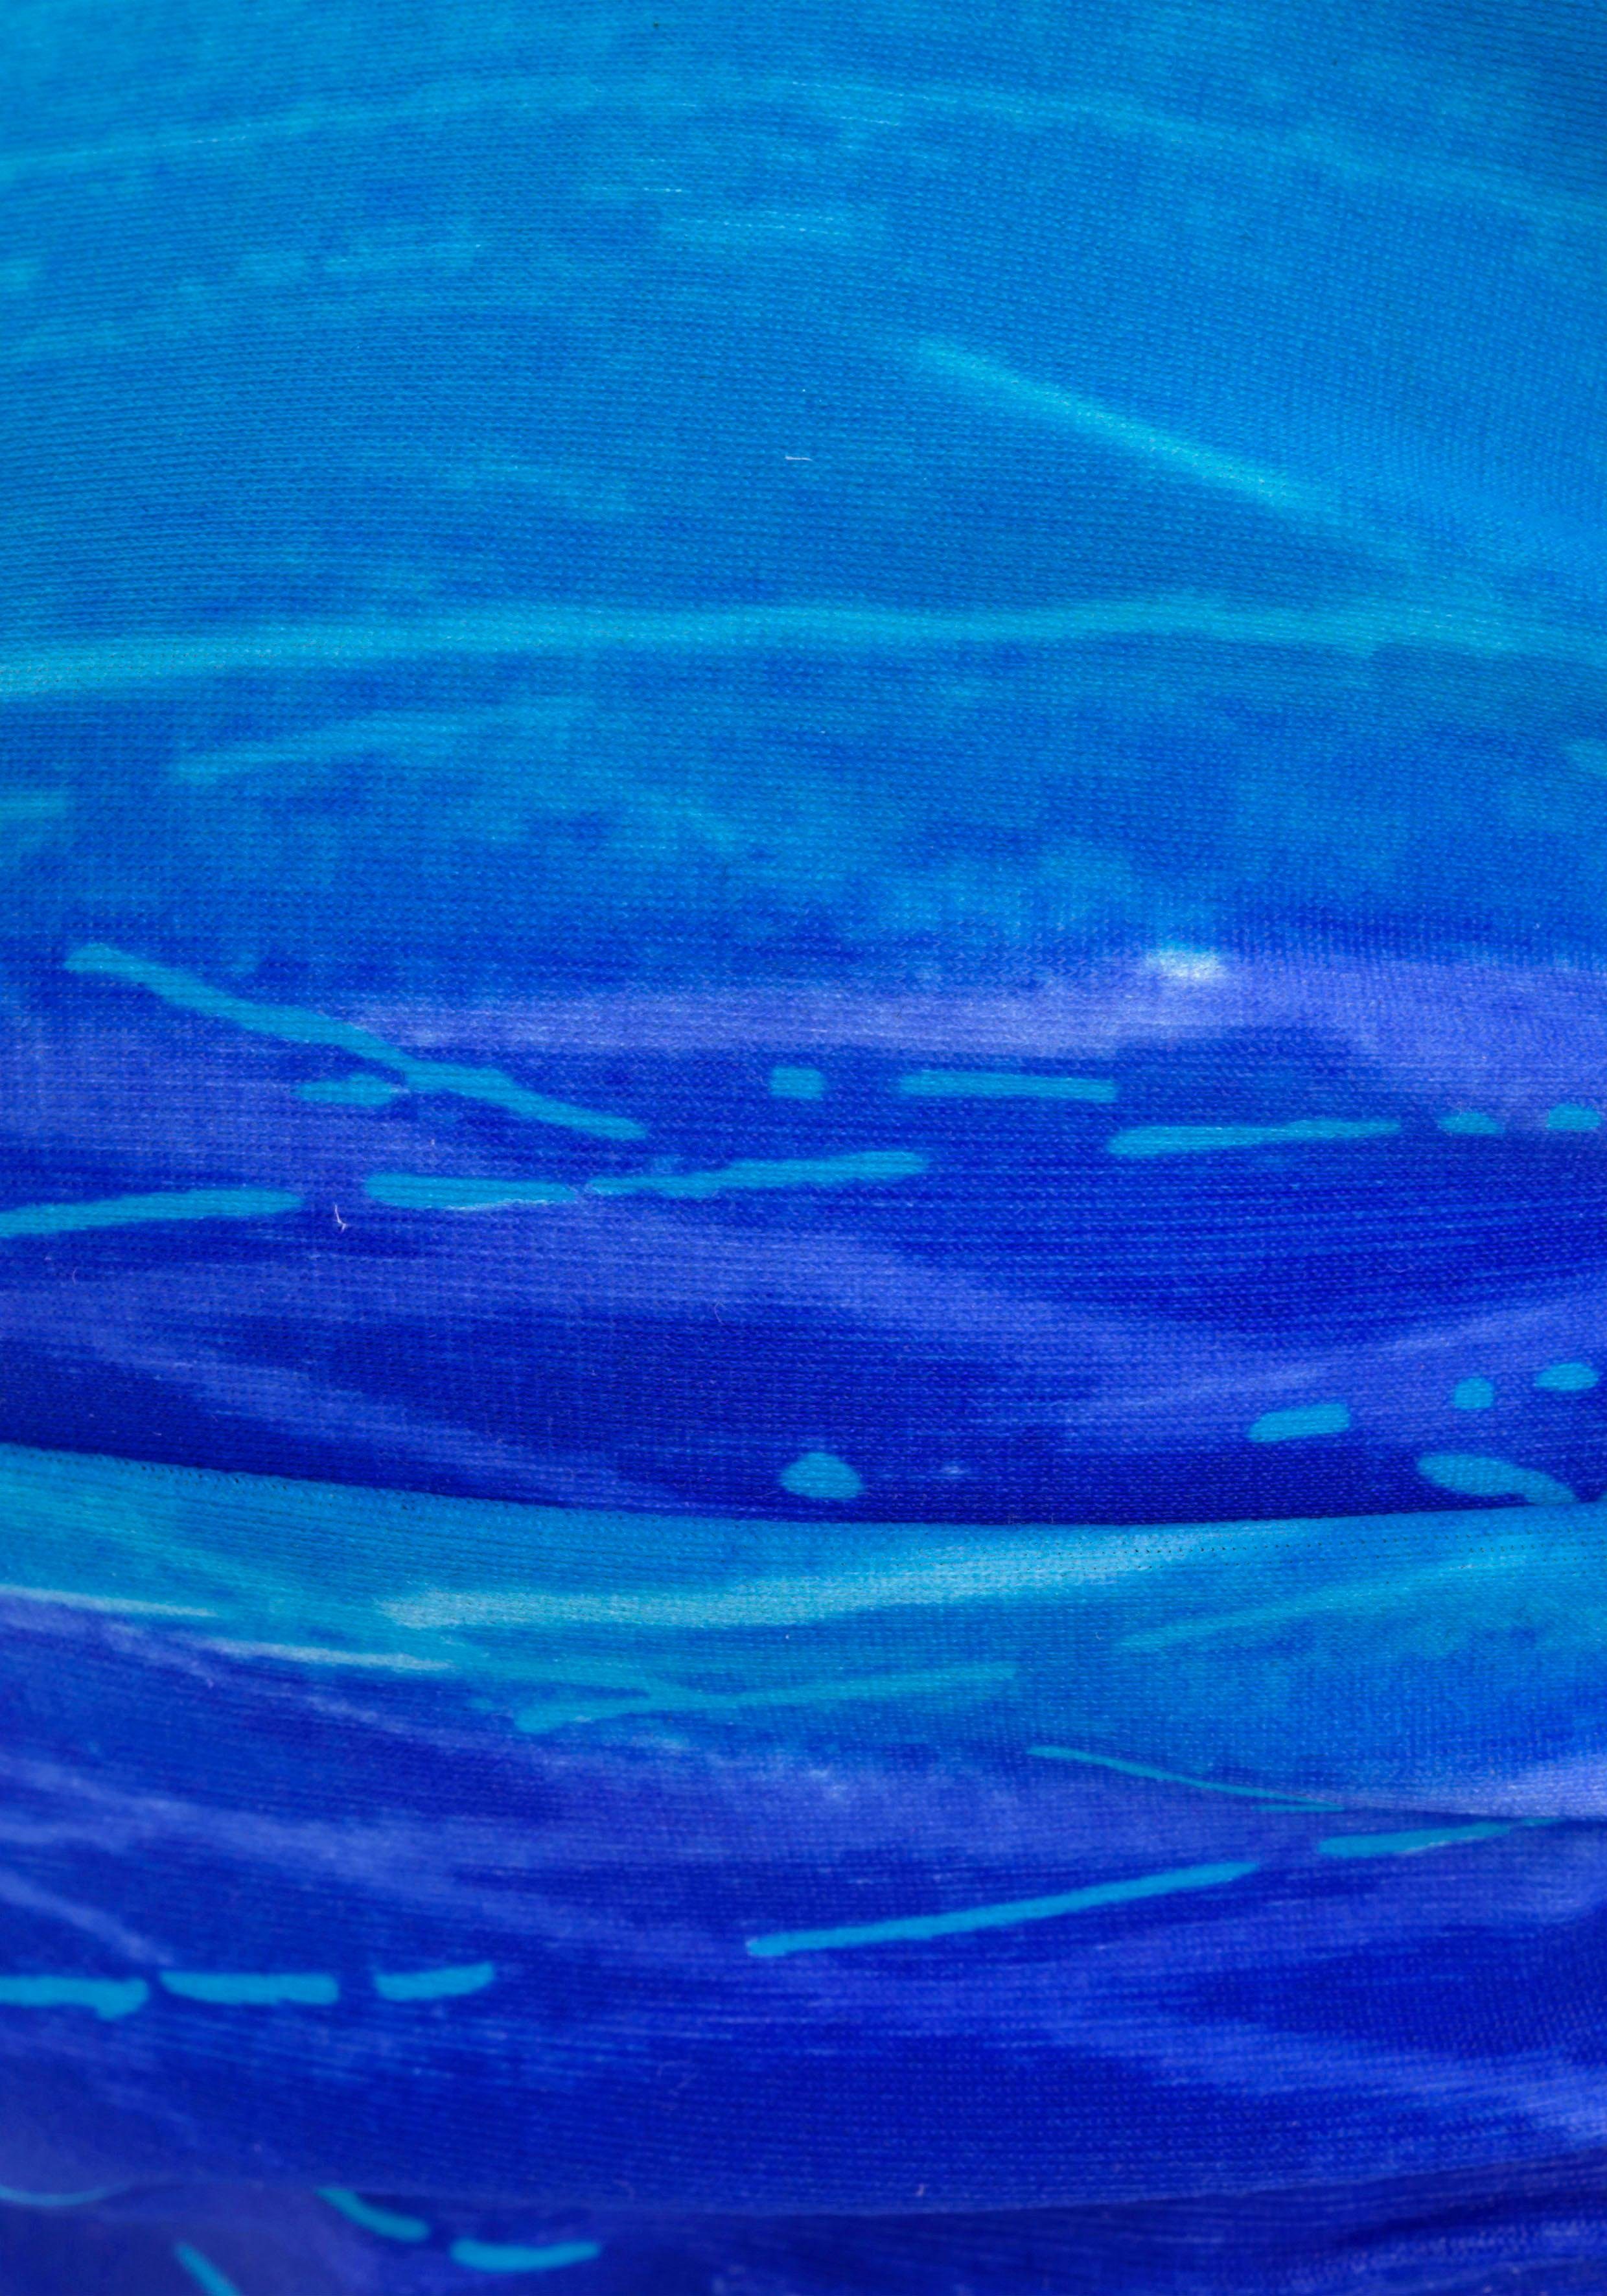 mit Batik-Optik Bügel-Bandeau-Bikini Farbverlauf in blau-bedruckt LASCANA